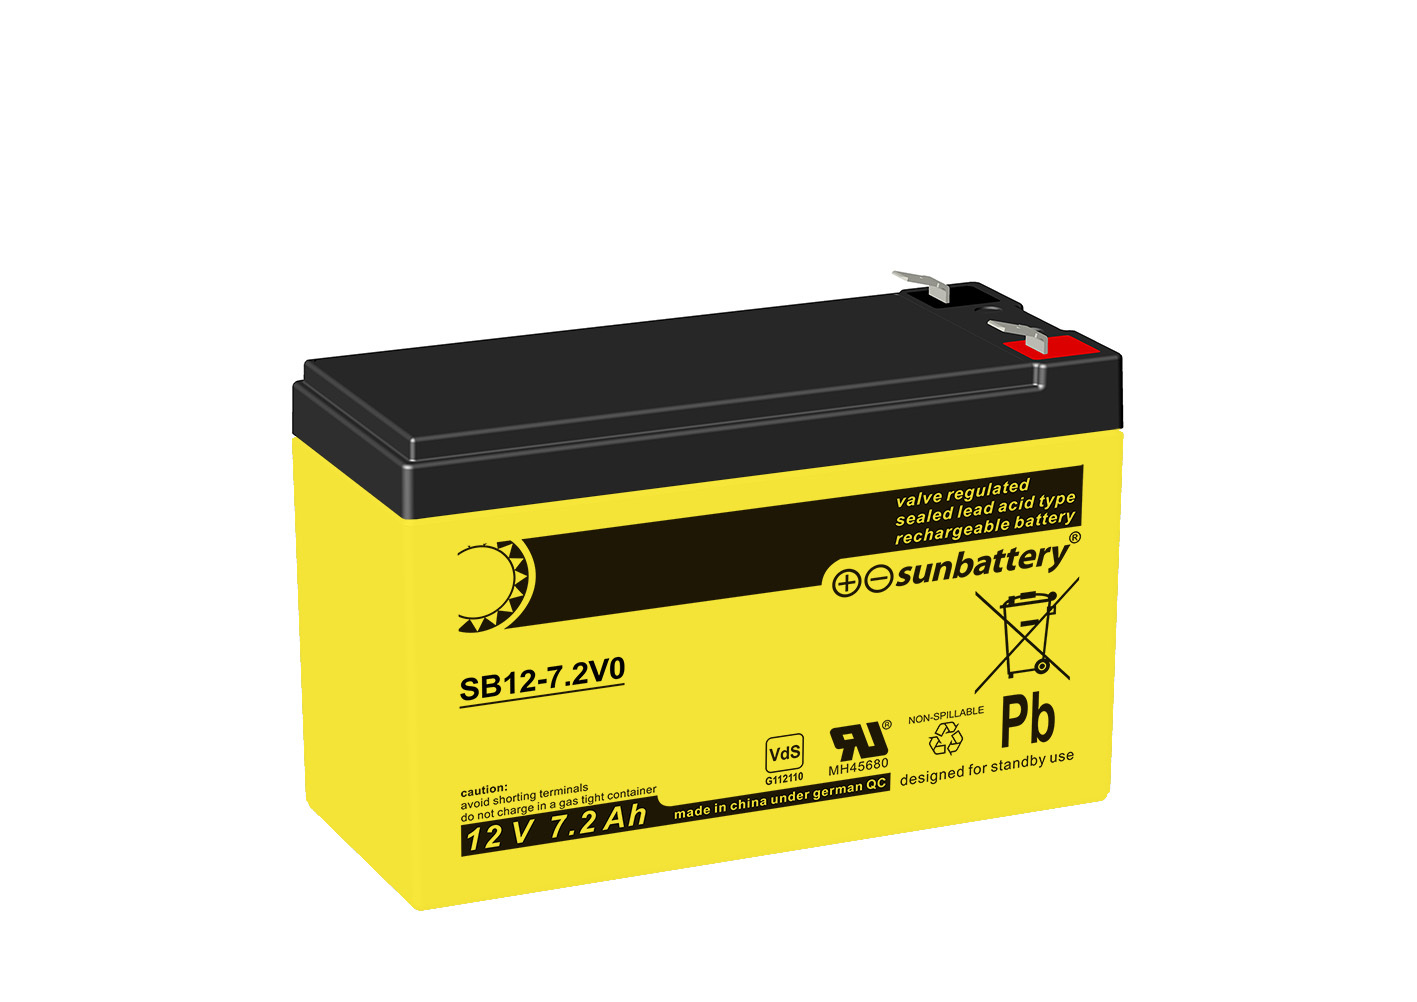 SUN Battery SB12-7.2V0